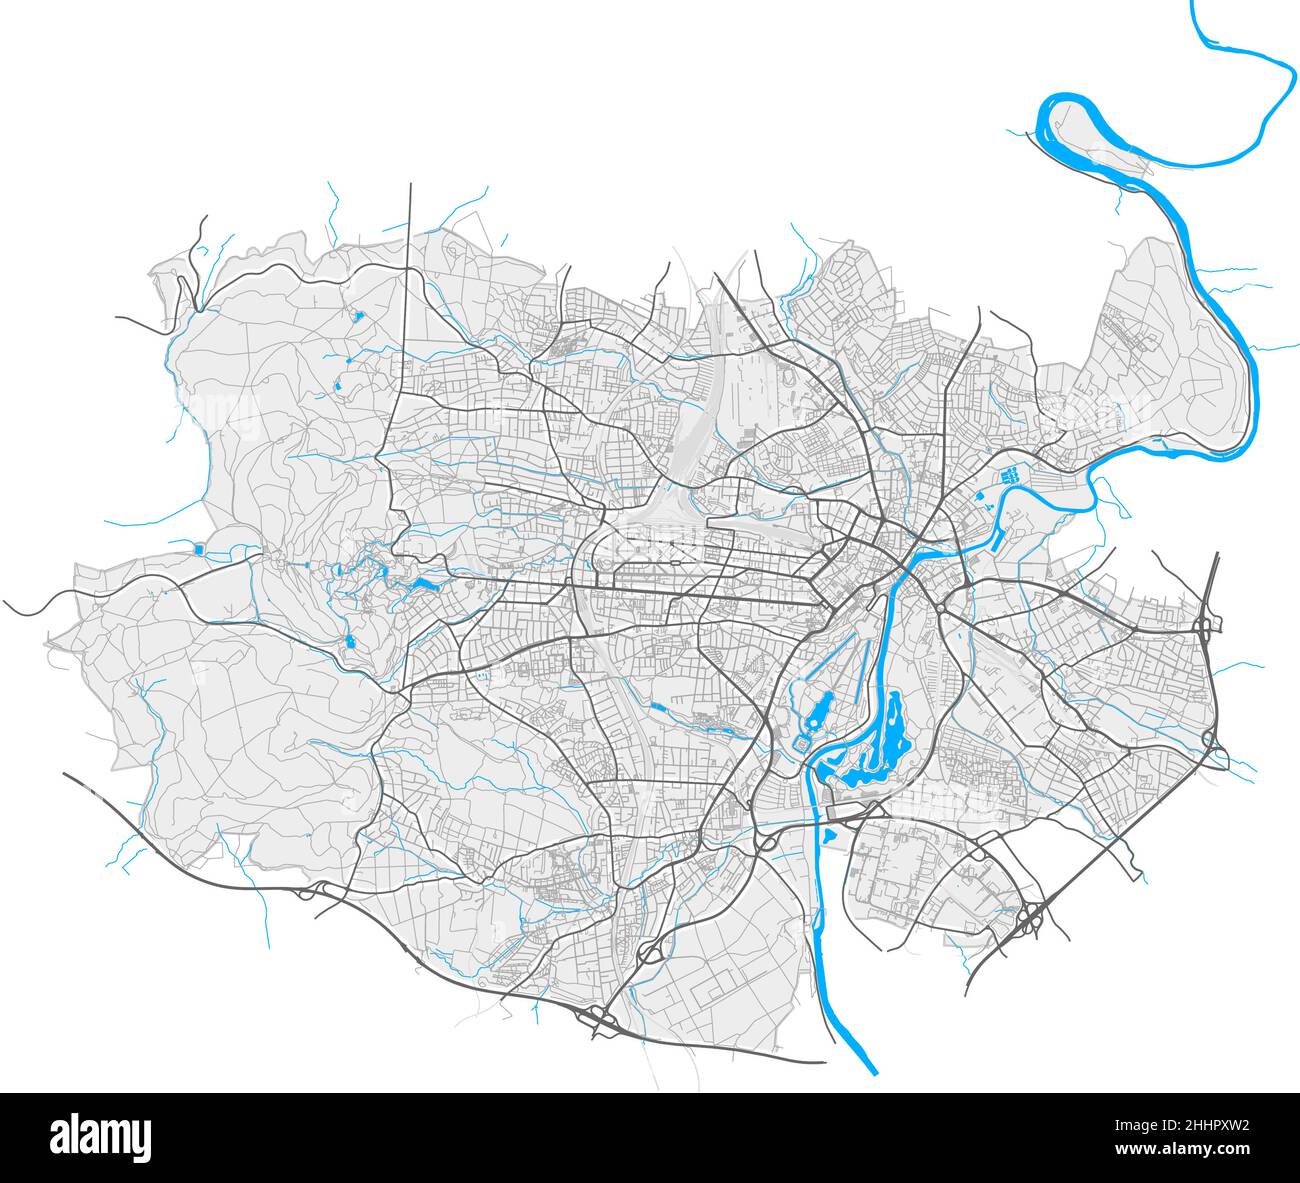 Kassel, Assia, Germania mappa vettoriale ad alta risoluzione con confini della città e percorsi modificabili. Contorni bianchi per le strade principali. Molti percorsi dettagliati. Blu cenere Illustrazione Vettoriale